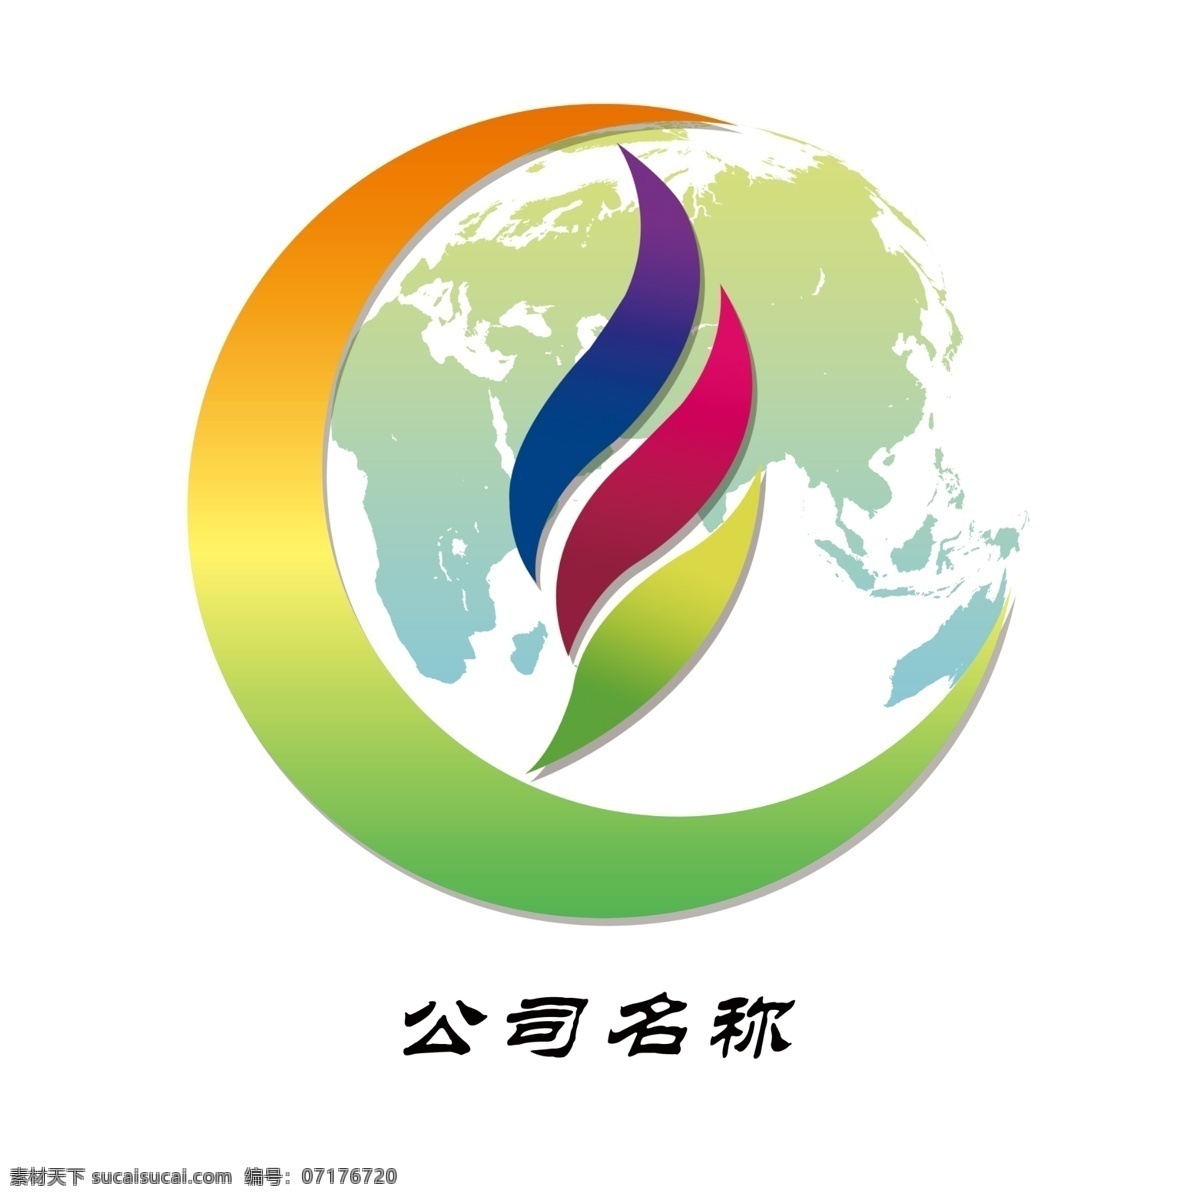 标志 logo 地球标志 地球logo 圆形标志 纺织标志 企业标志 logo设计